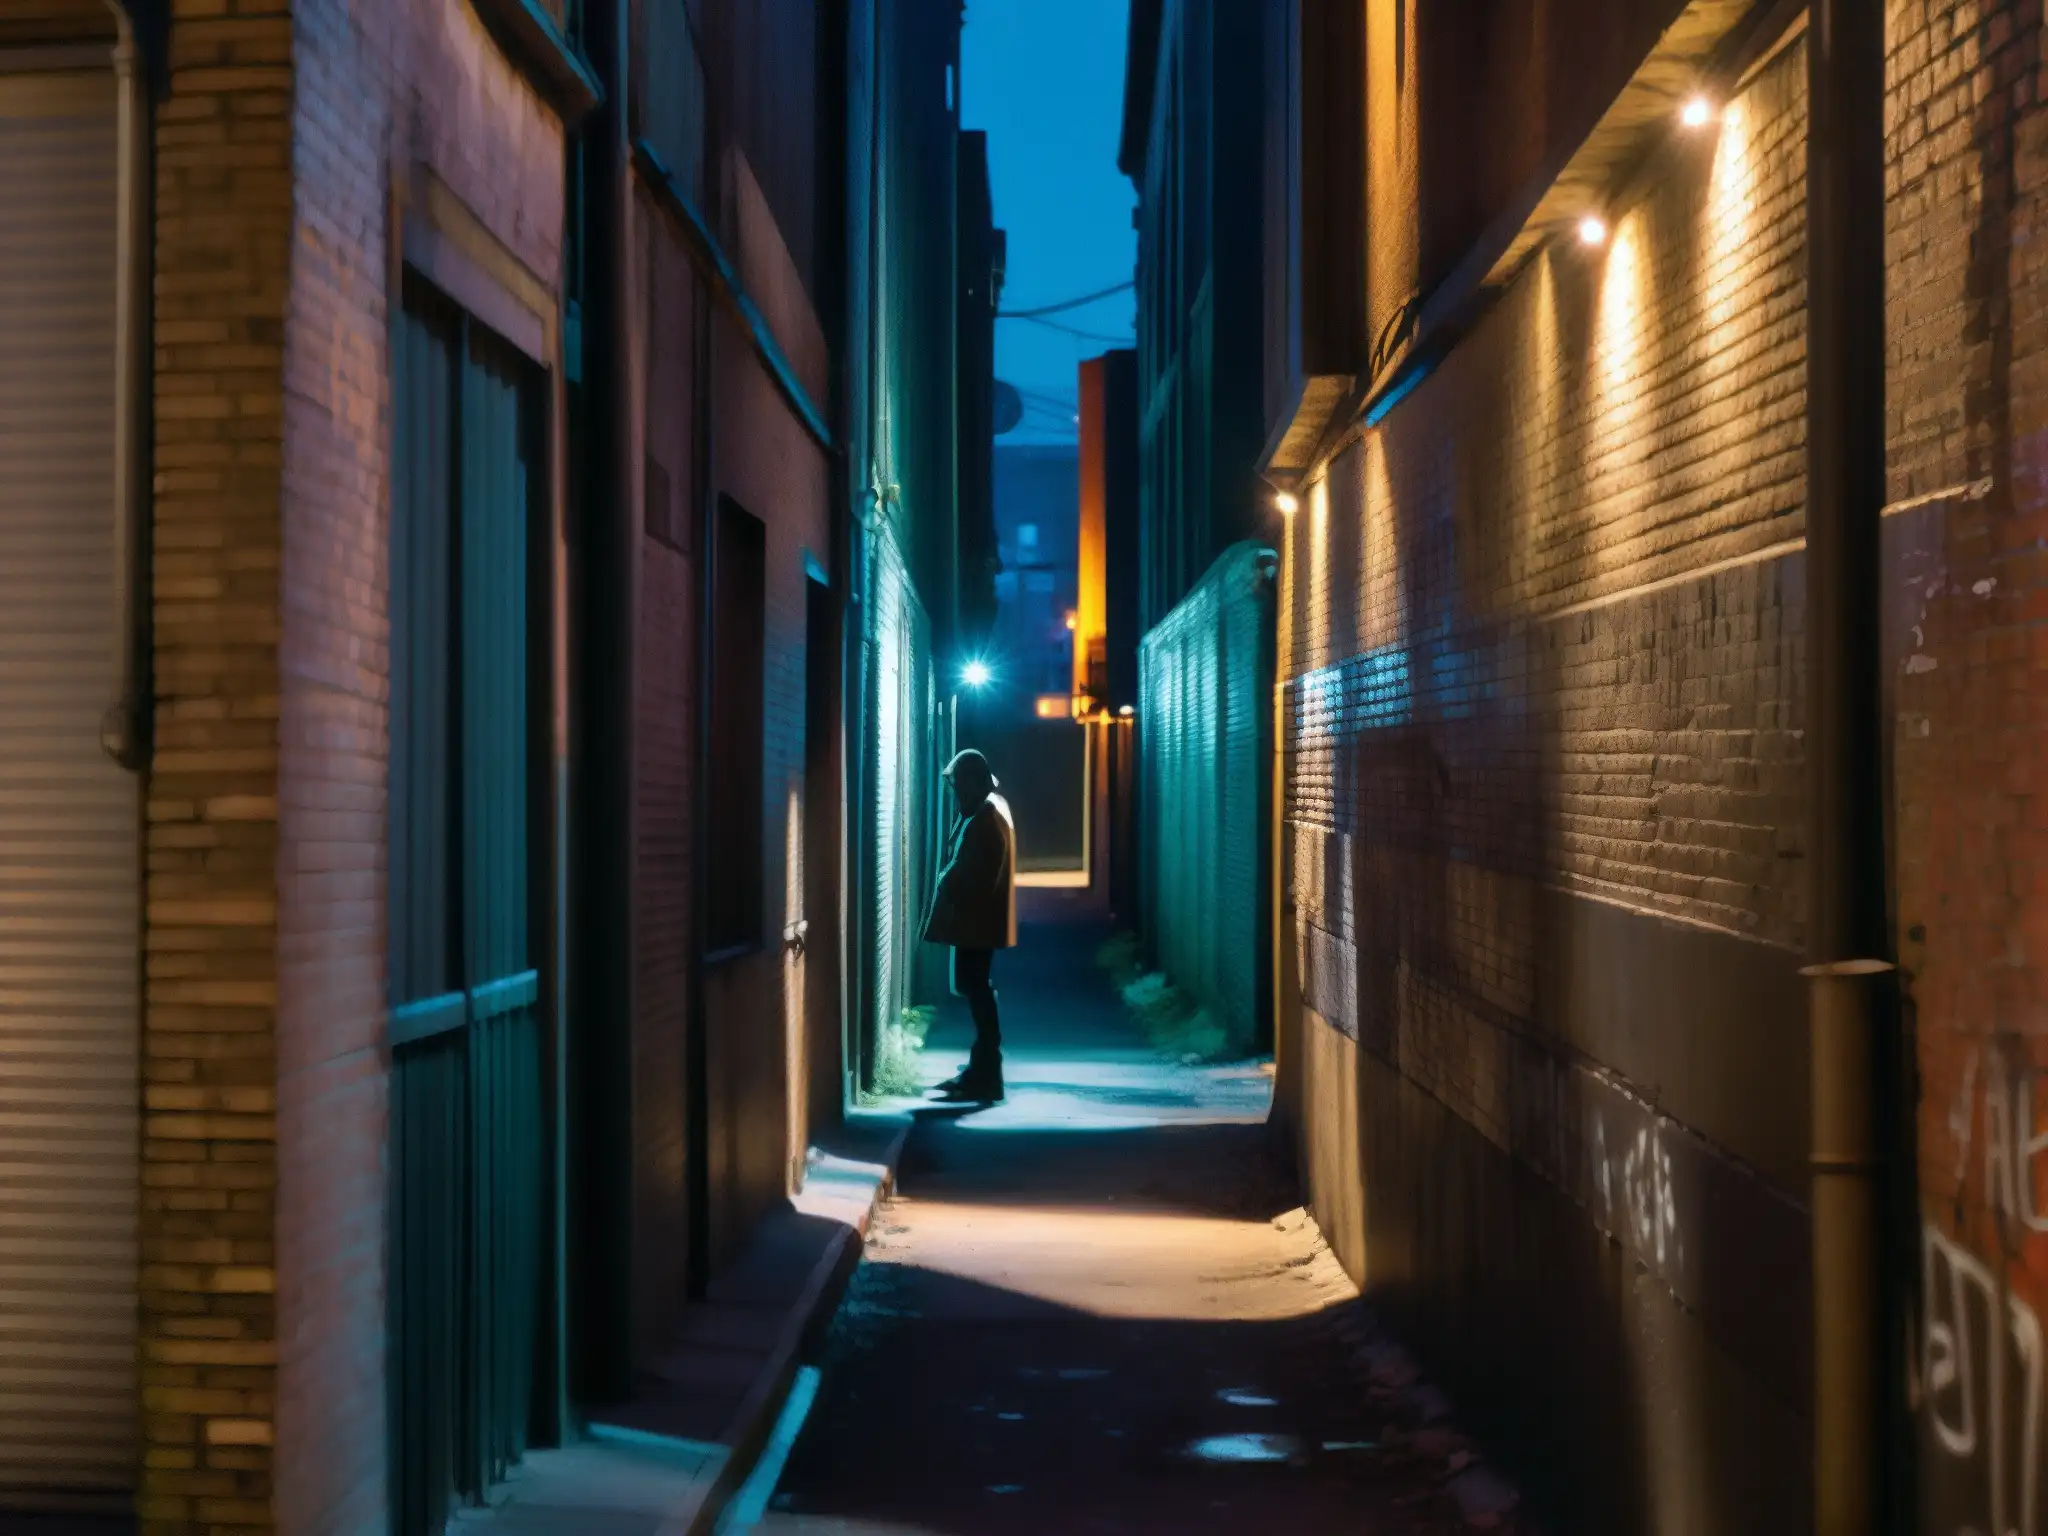 Un callejón urbano sombrío iluminado por tenues luces de la calle, con una figura solitaria en la penumbra